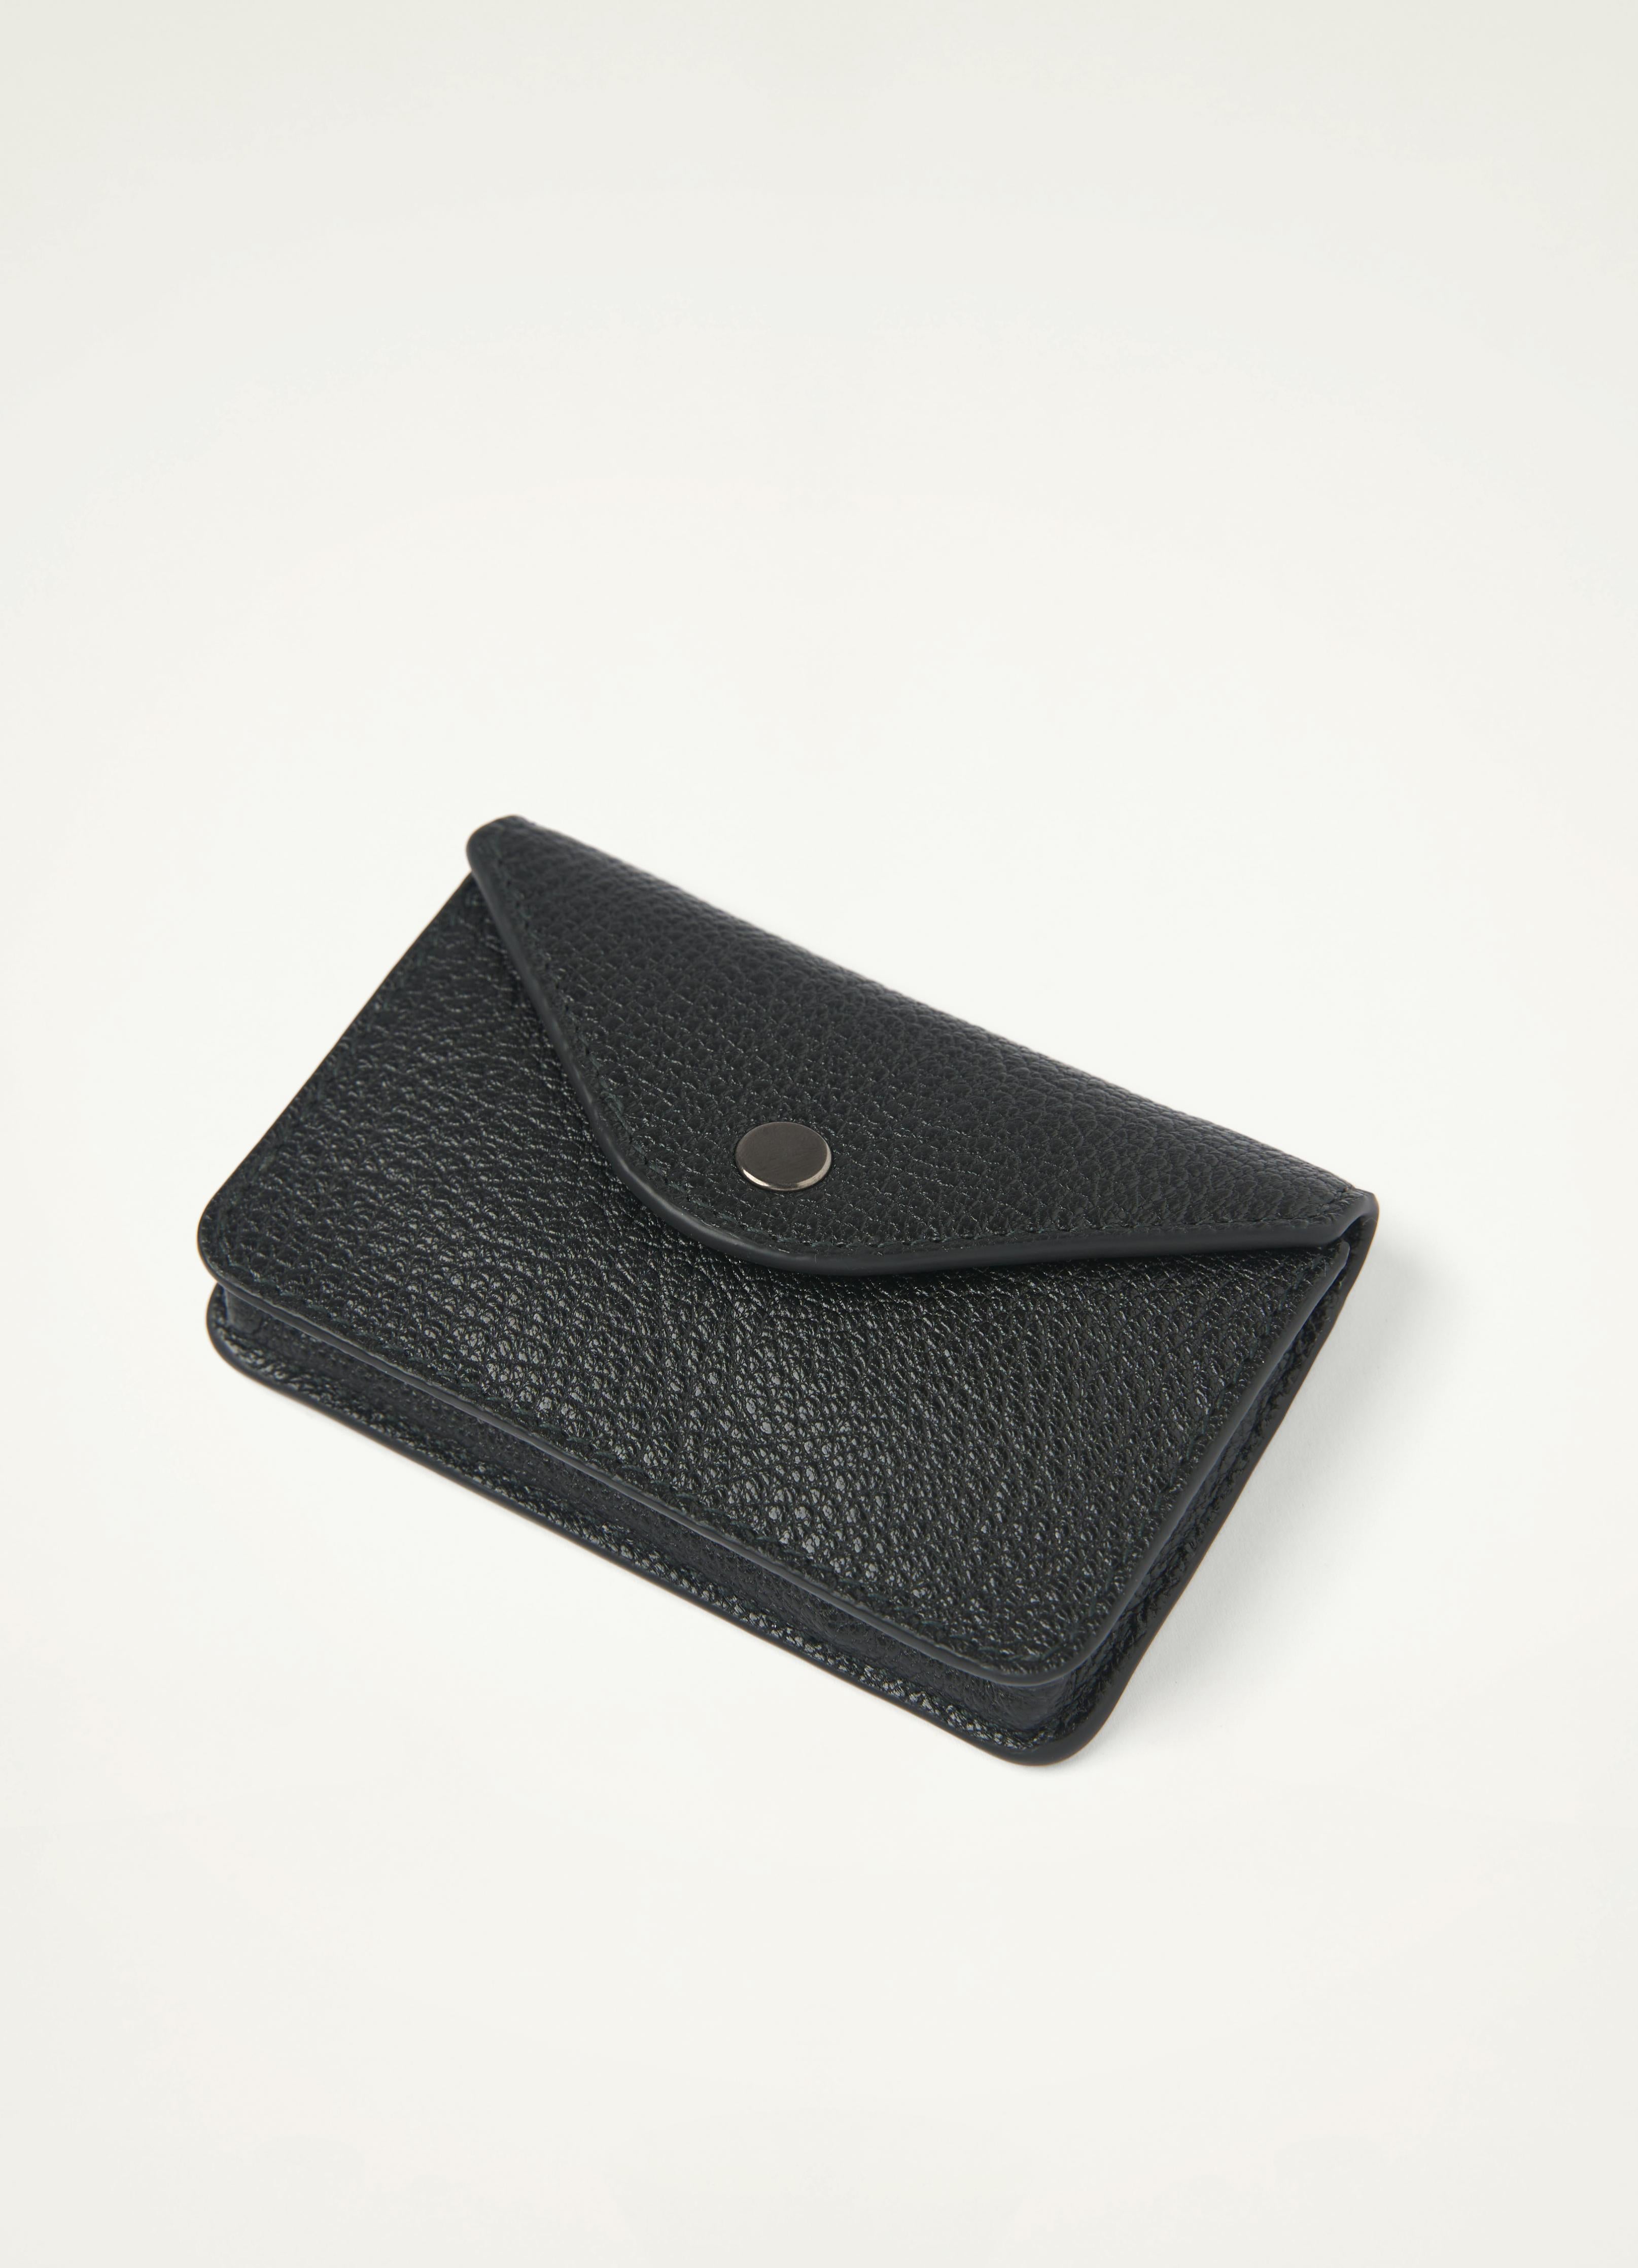 Cash Envelope Wallet Purse Mix Colors 5 pcs Gota Lace Work Money Bag Gift  Card | BID123